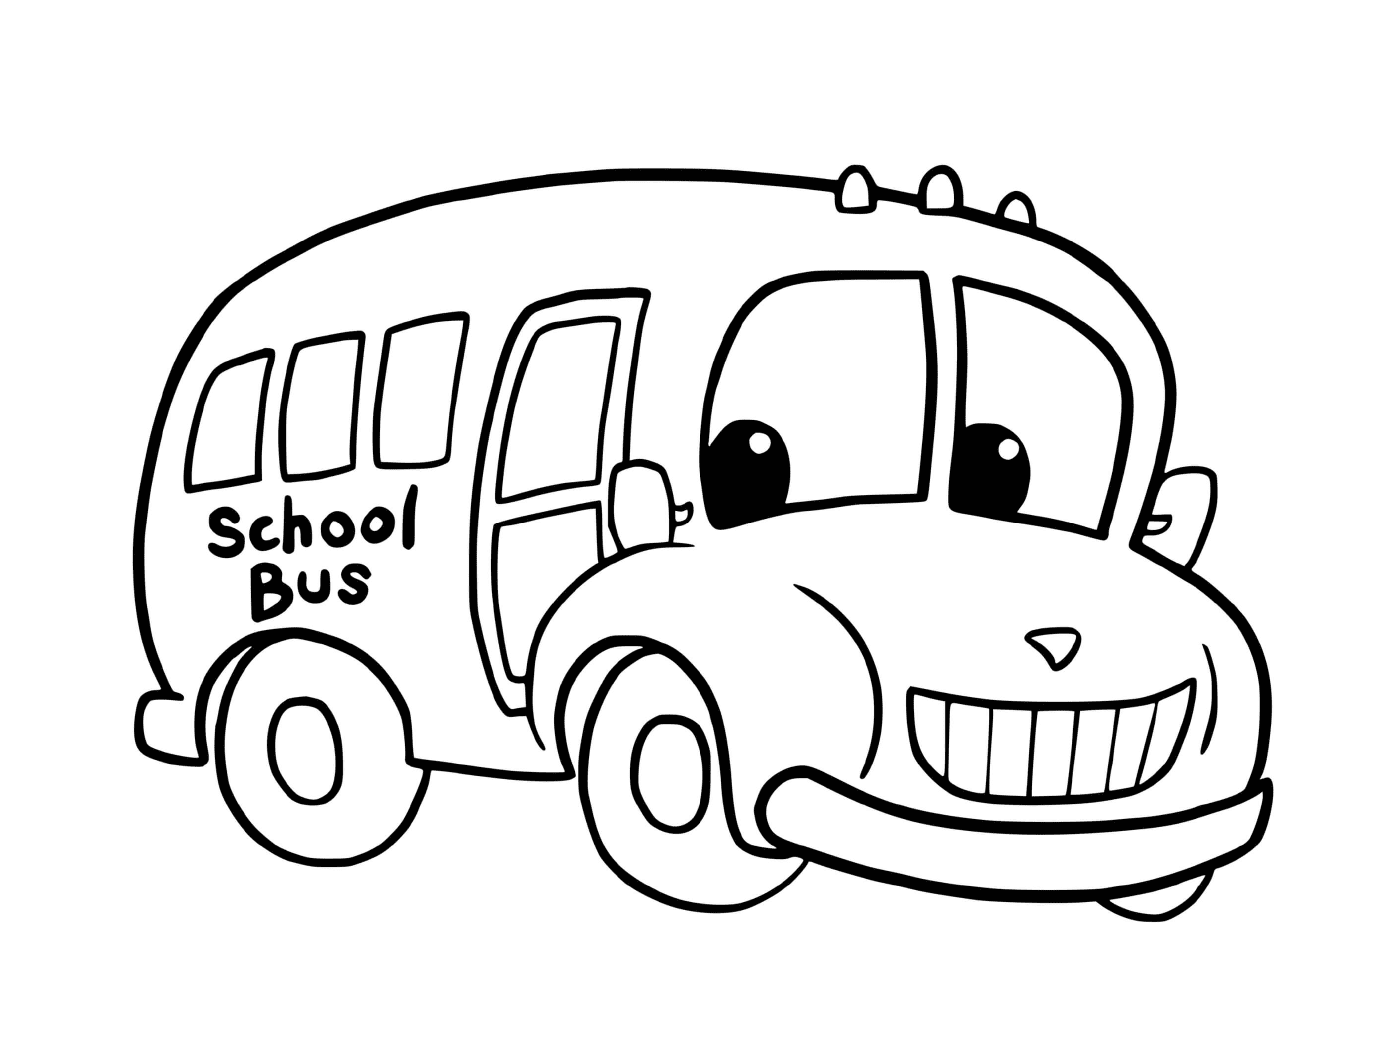  Autobus scolastici 